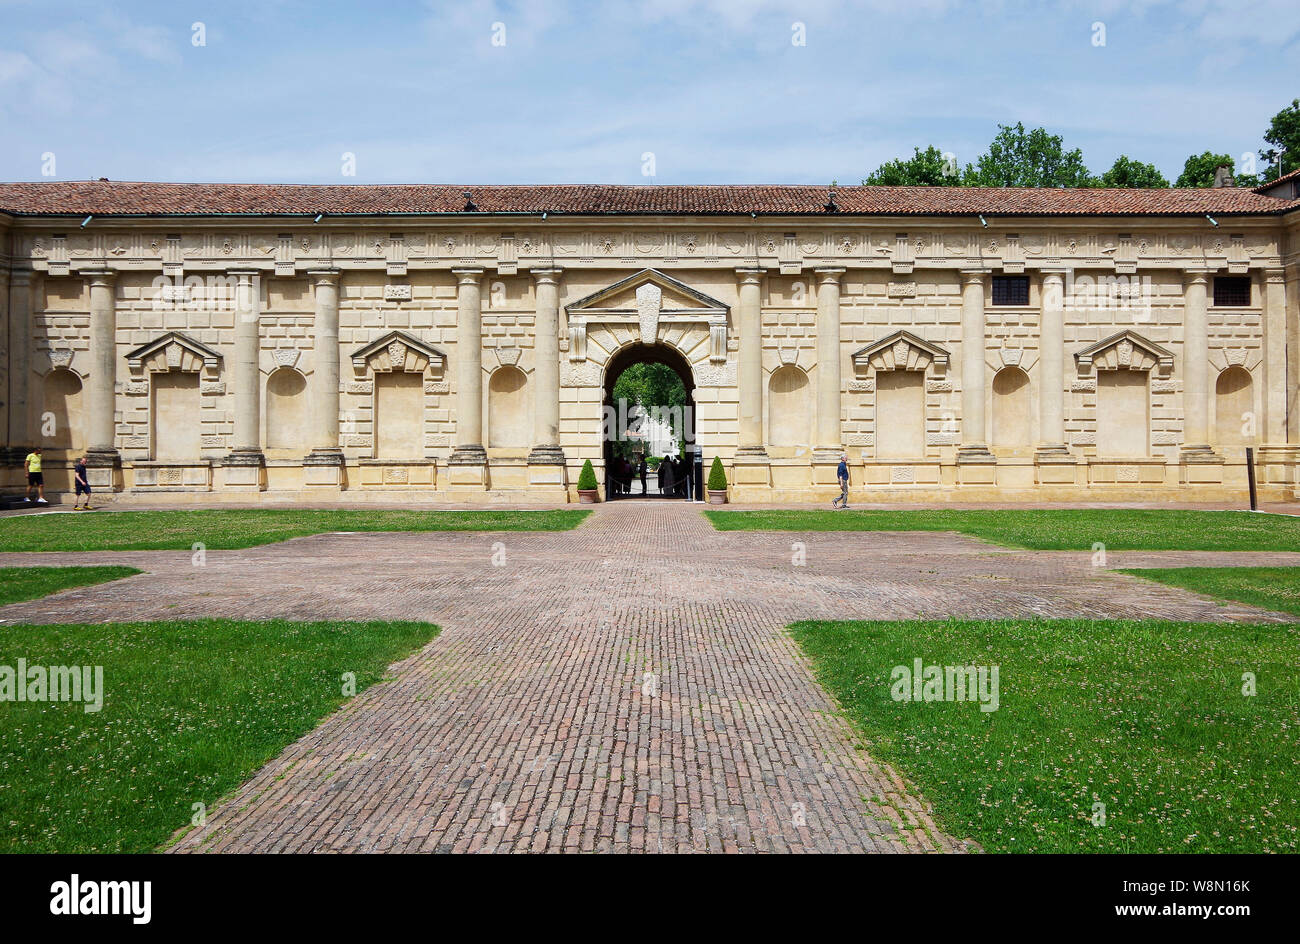 Il Cortile, Cour d'Honneur o del cortile di Palazzo Te a Mantova, Italia, 1524-34 costruito in stile manierista dall'architetto Giulio Romana Foto Stock